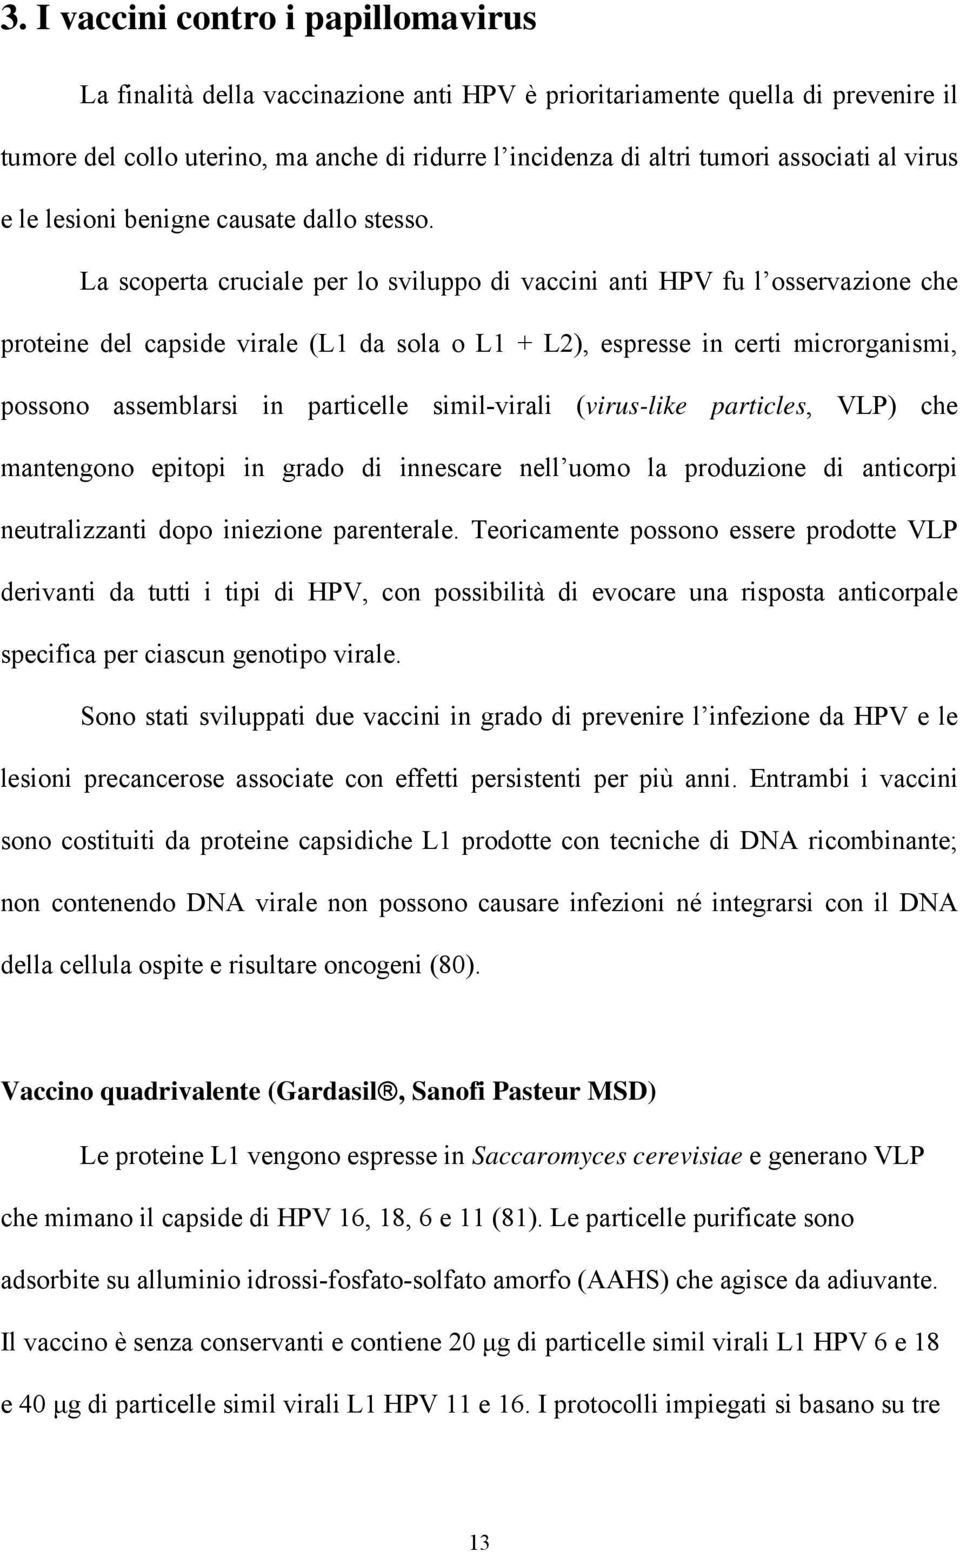 La scoperta cruciale per lo sviluppo di vaccini anti HPV fu l osservazione che proteine del capside virale (L1 da sola o L1 + L2), espresse in certi microrganismi, possono assemblarsi in particelle